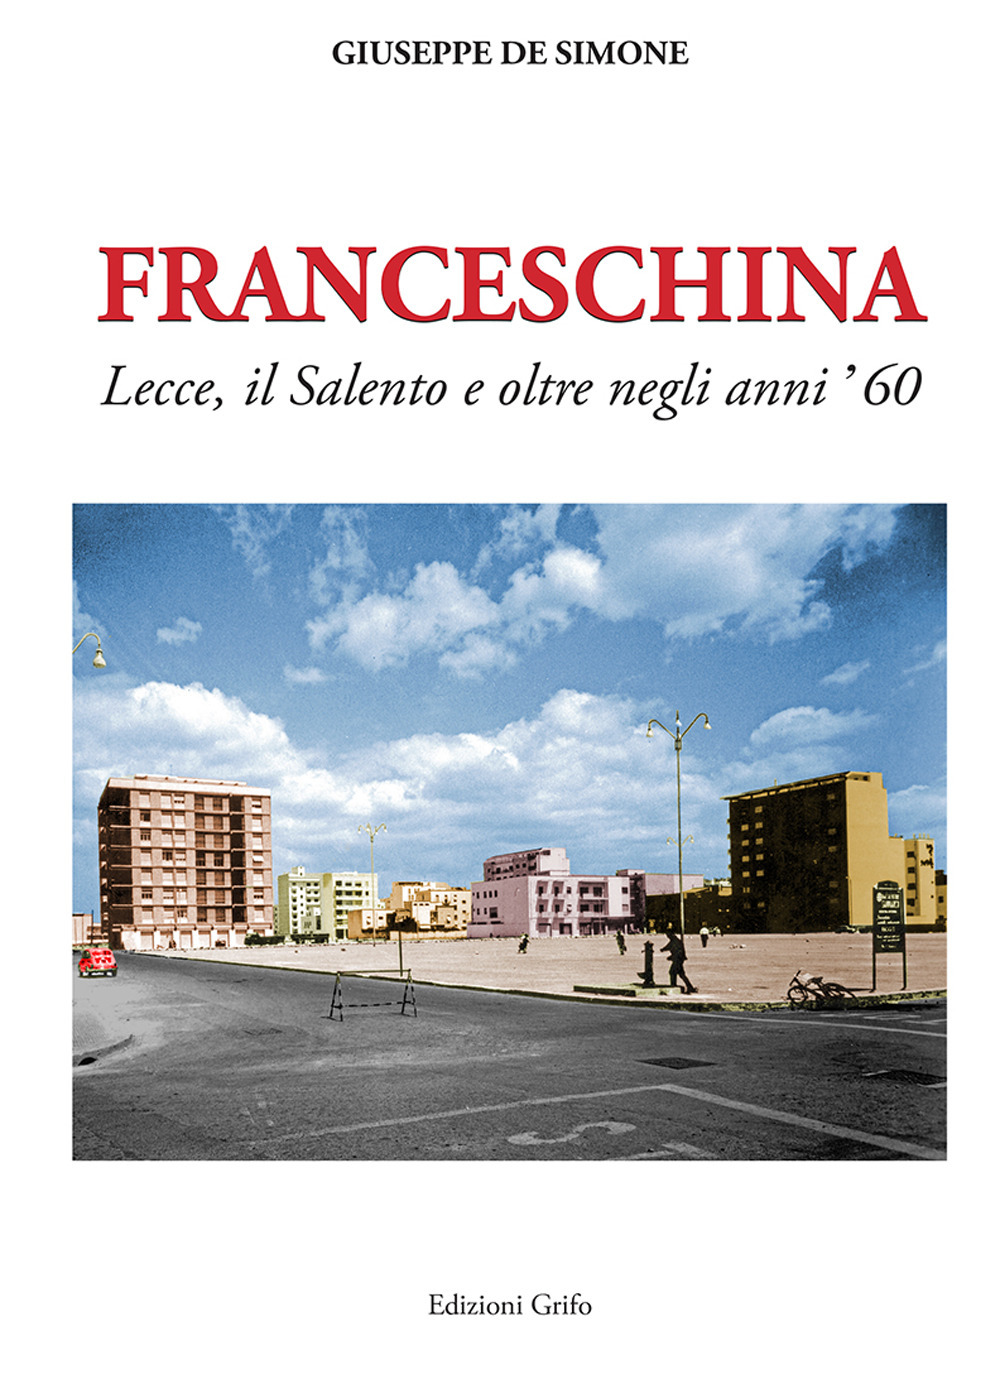 Franceschina. Lecce, il Salento e oltre negli anni '60